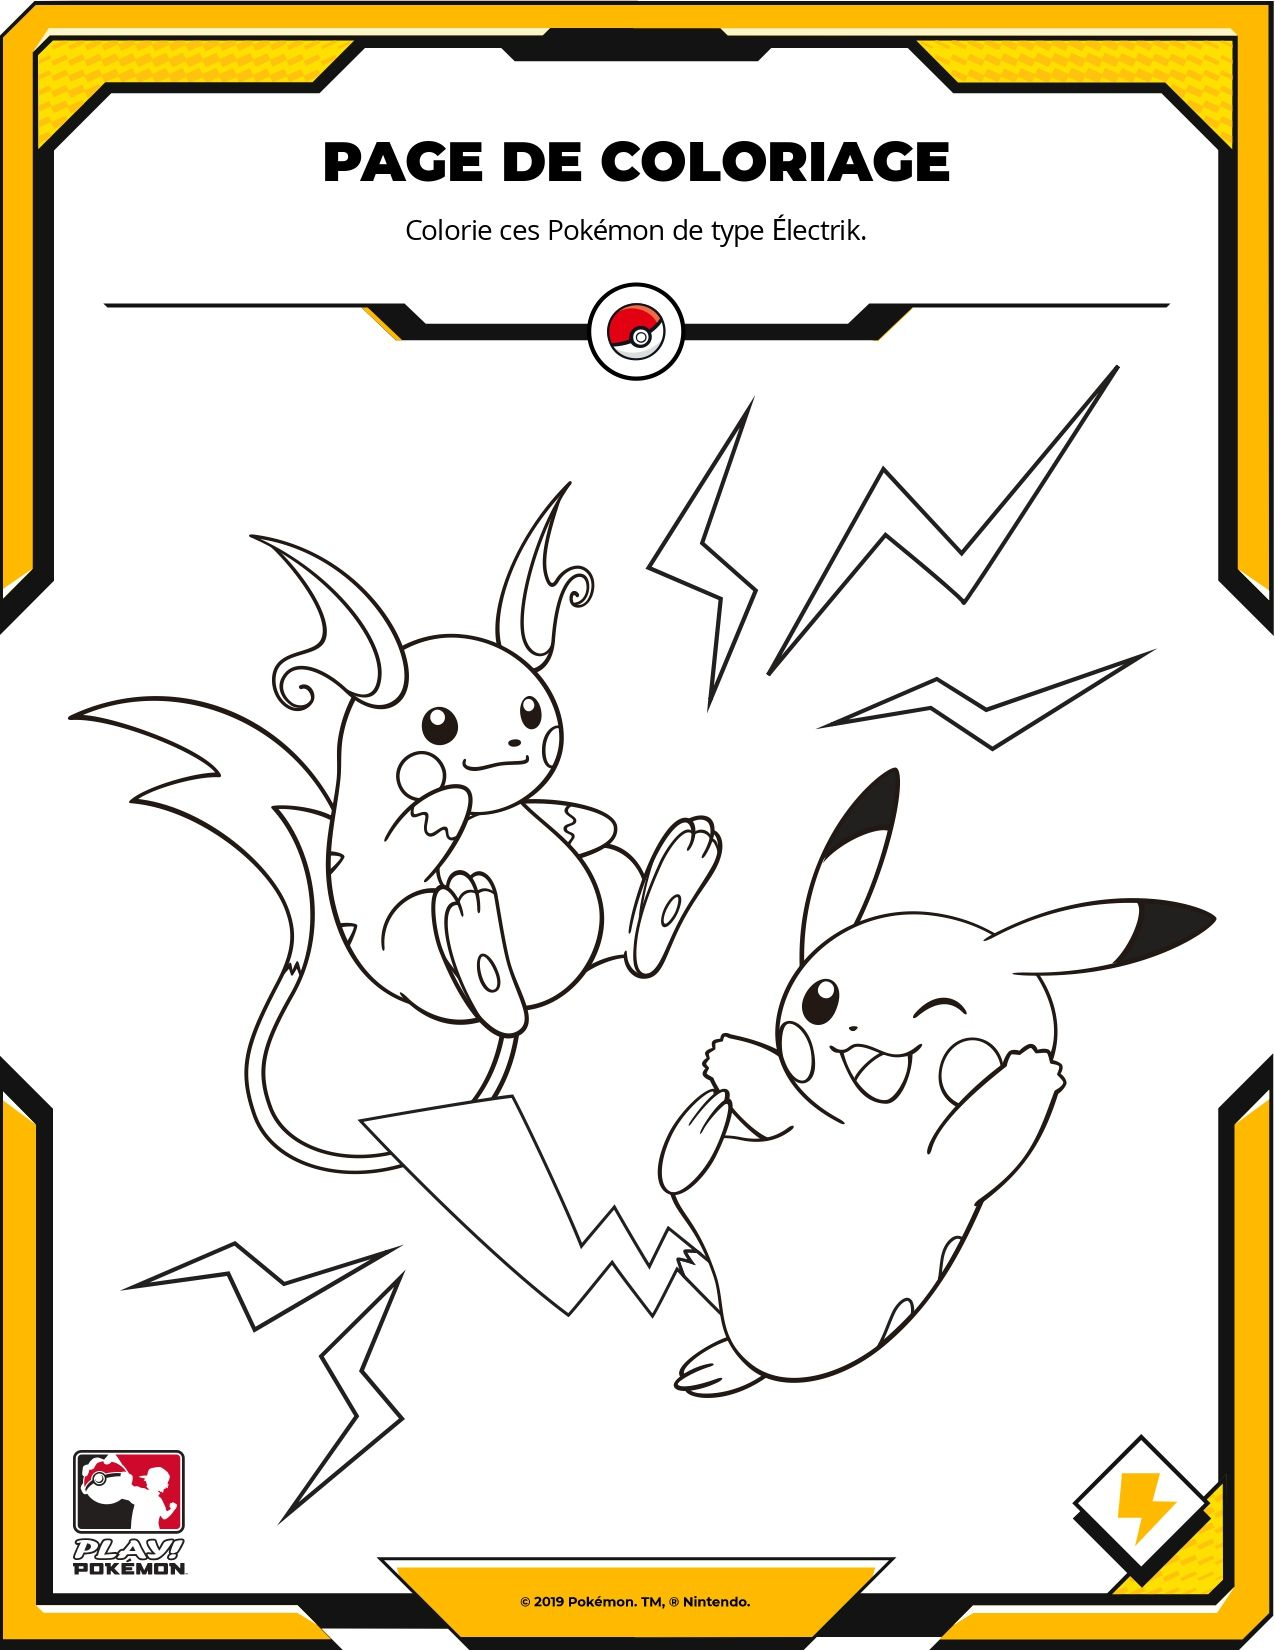 Coloriage Pokémon : Pikachu Et Raichu | Coloring Pages dedans Dessin Pikachu